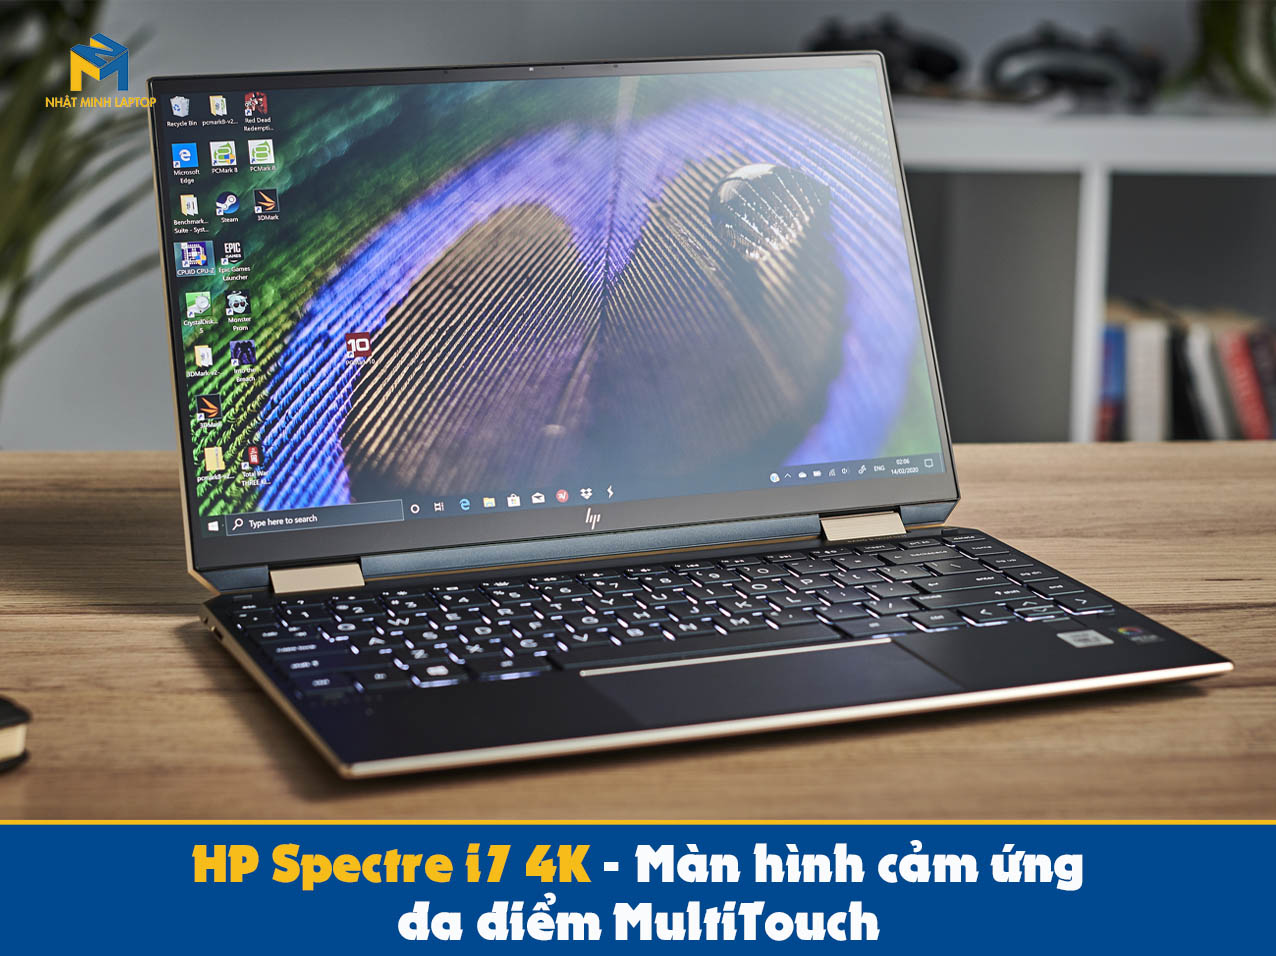 HP Spectre i7 4K - Màn hình cảm ứng đa điểm MultiTouch